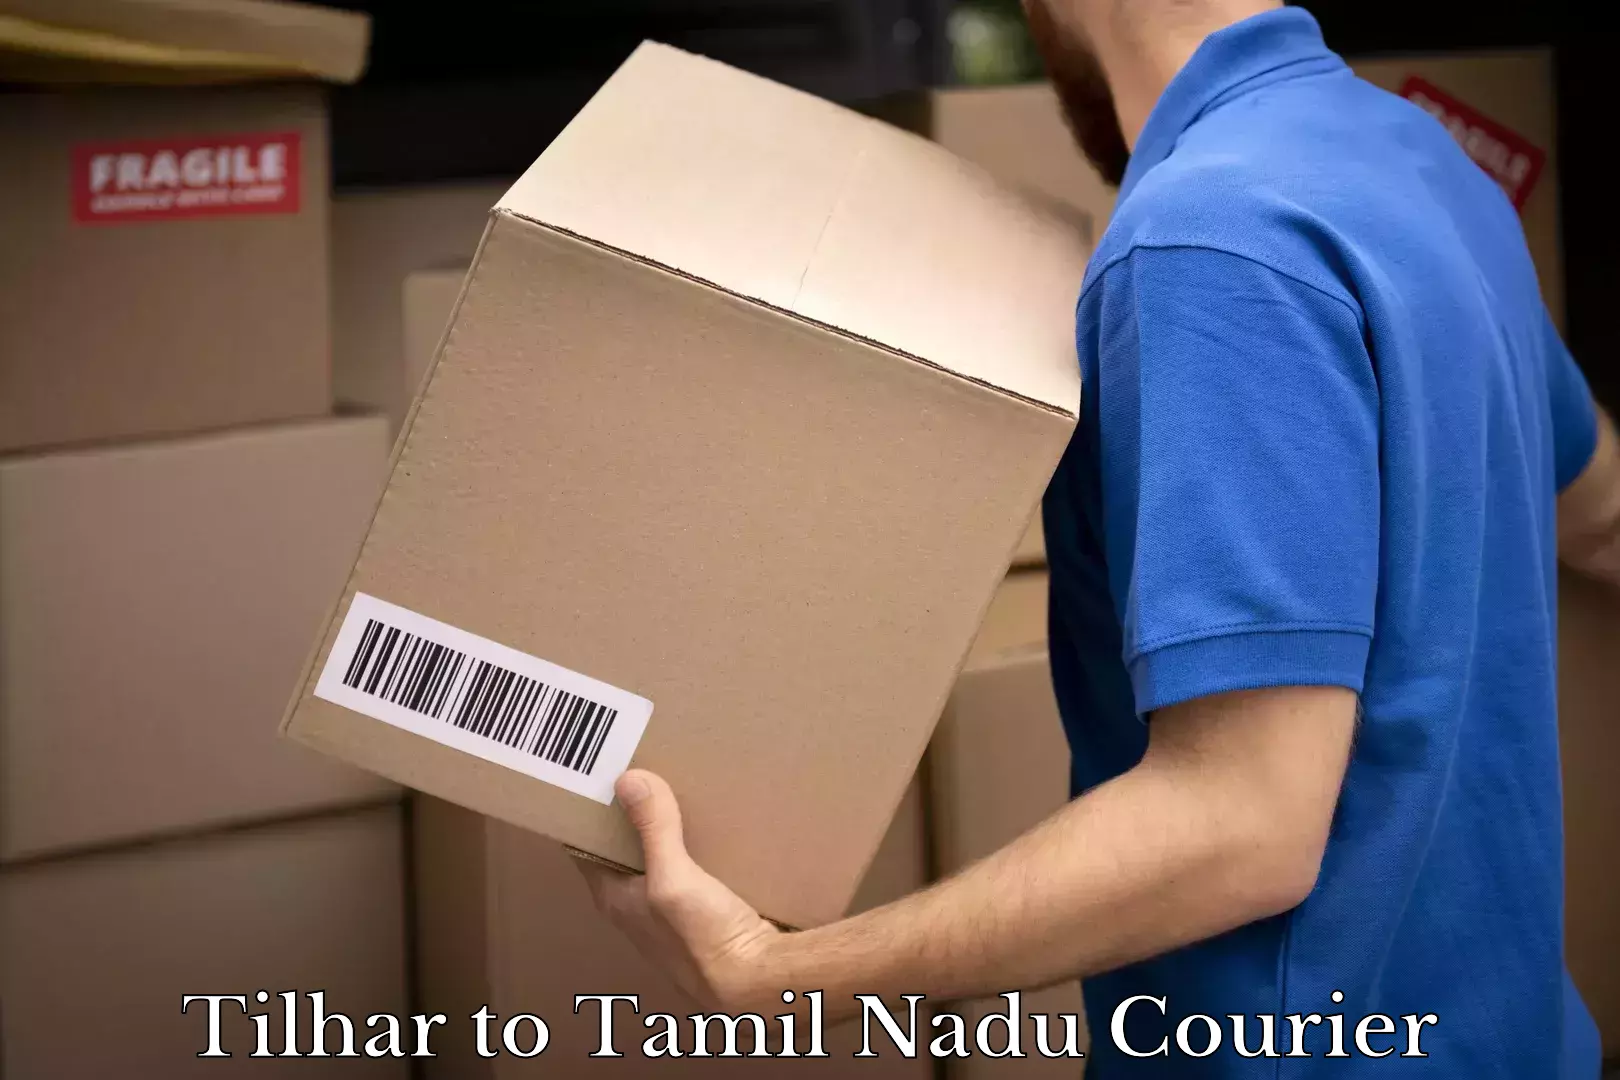 Door-to-door freight service Tilhar to Tamil Nadu